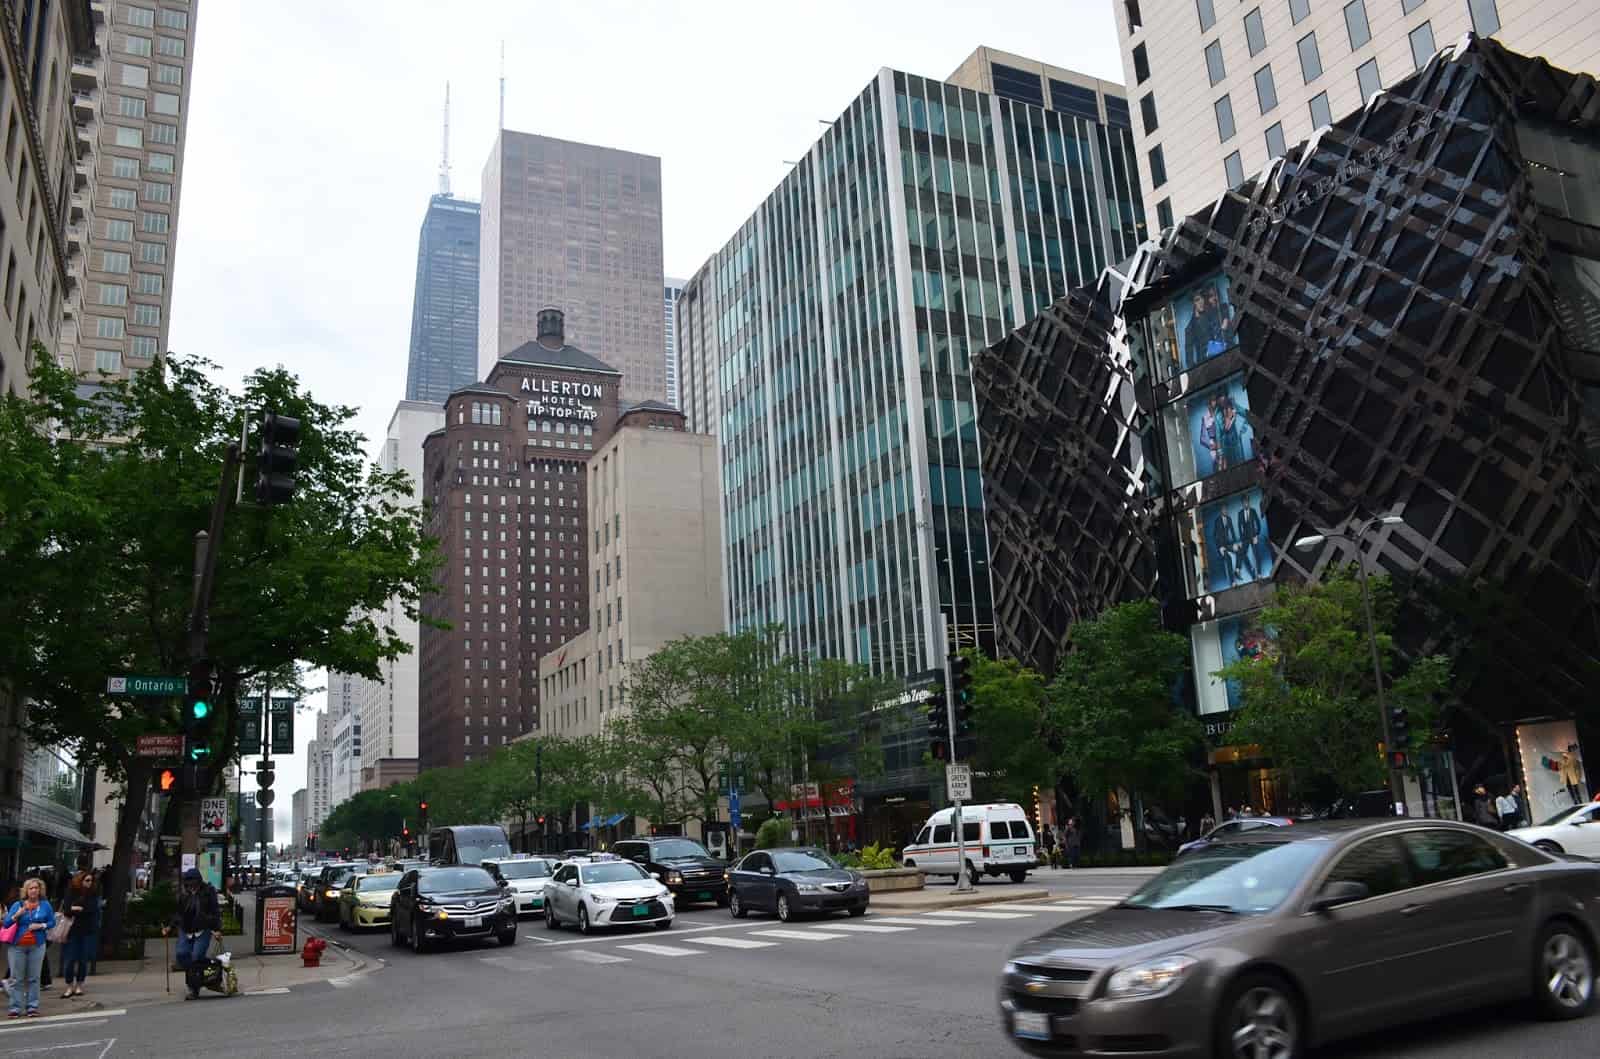 Magnificent Mile, Michigan Avenue in Chicago